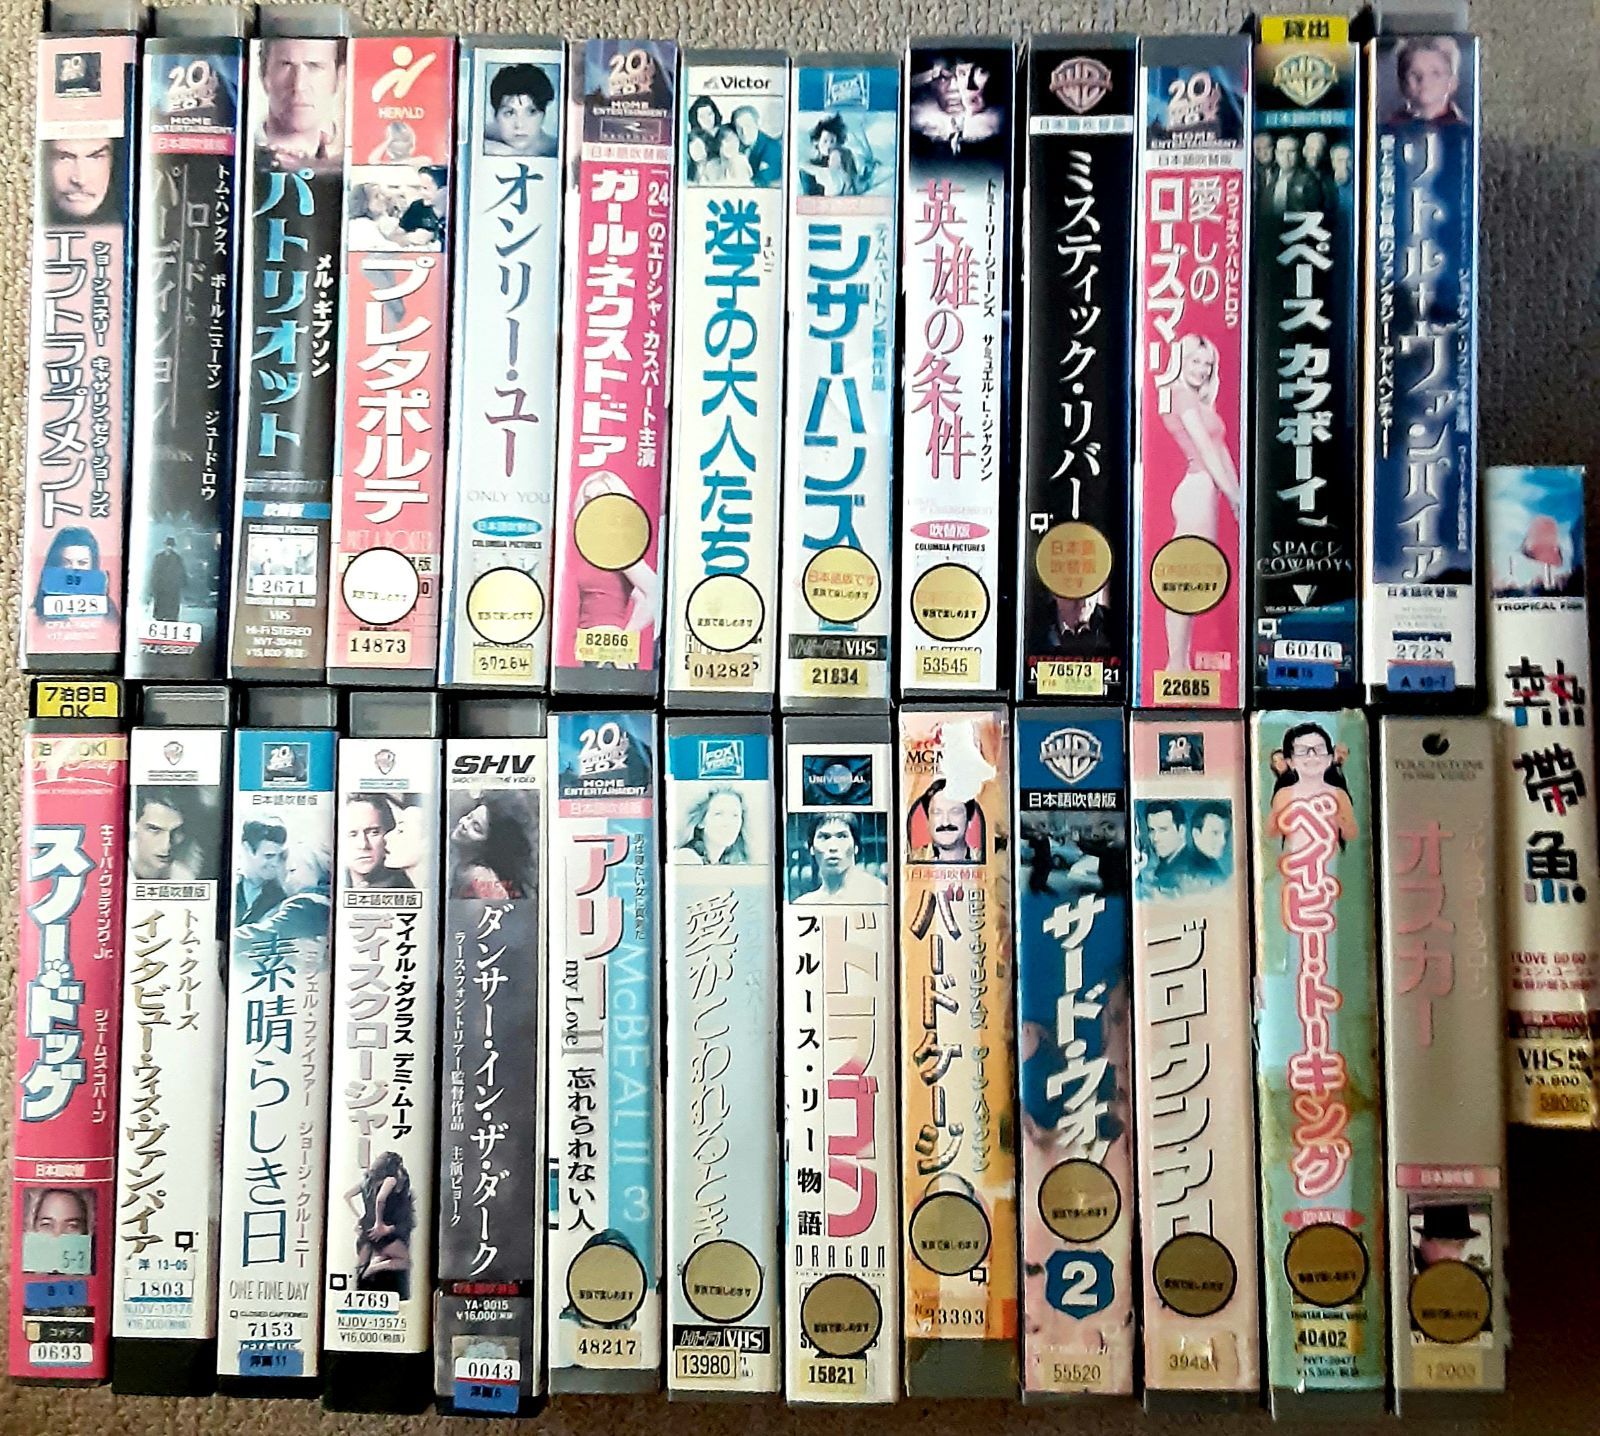 「荒野のルチャライダース/幻の美女とチャンピオン」 VHS ビデオテープ